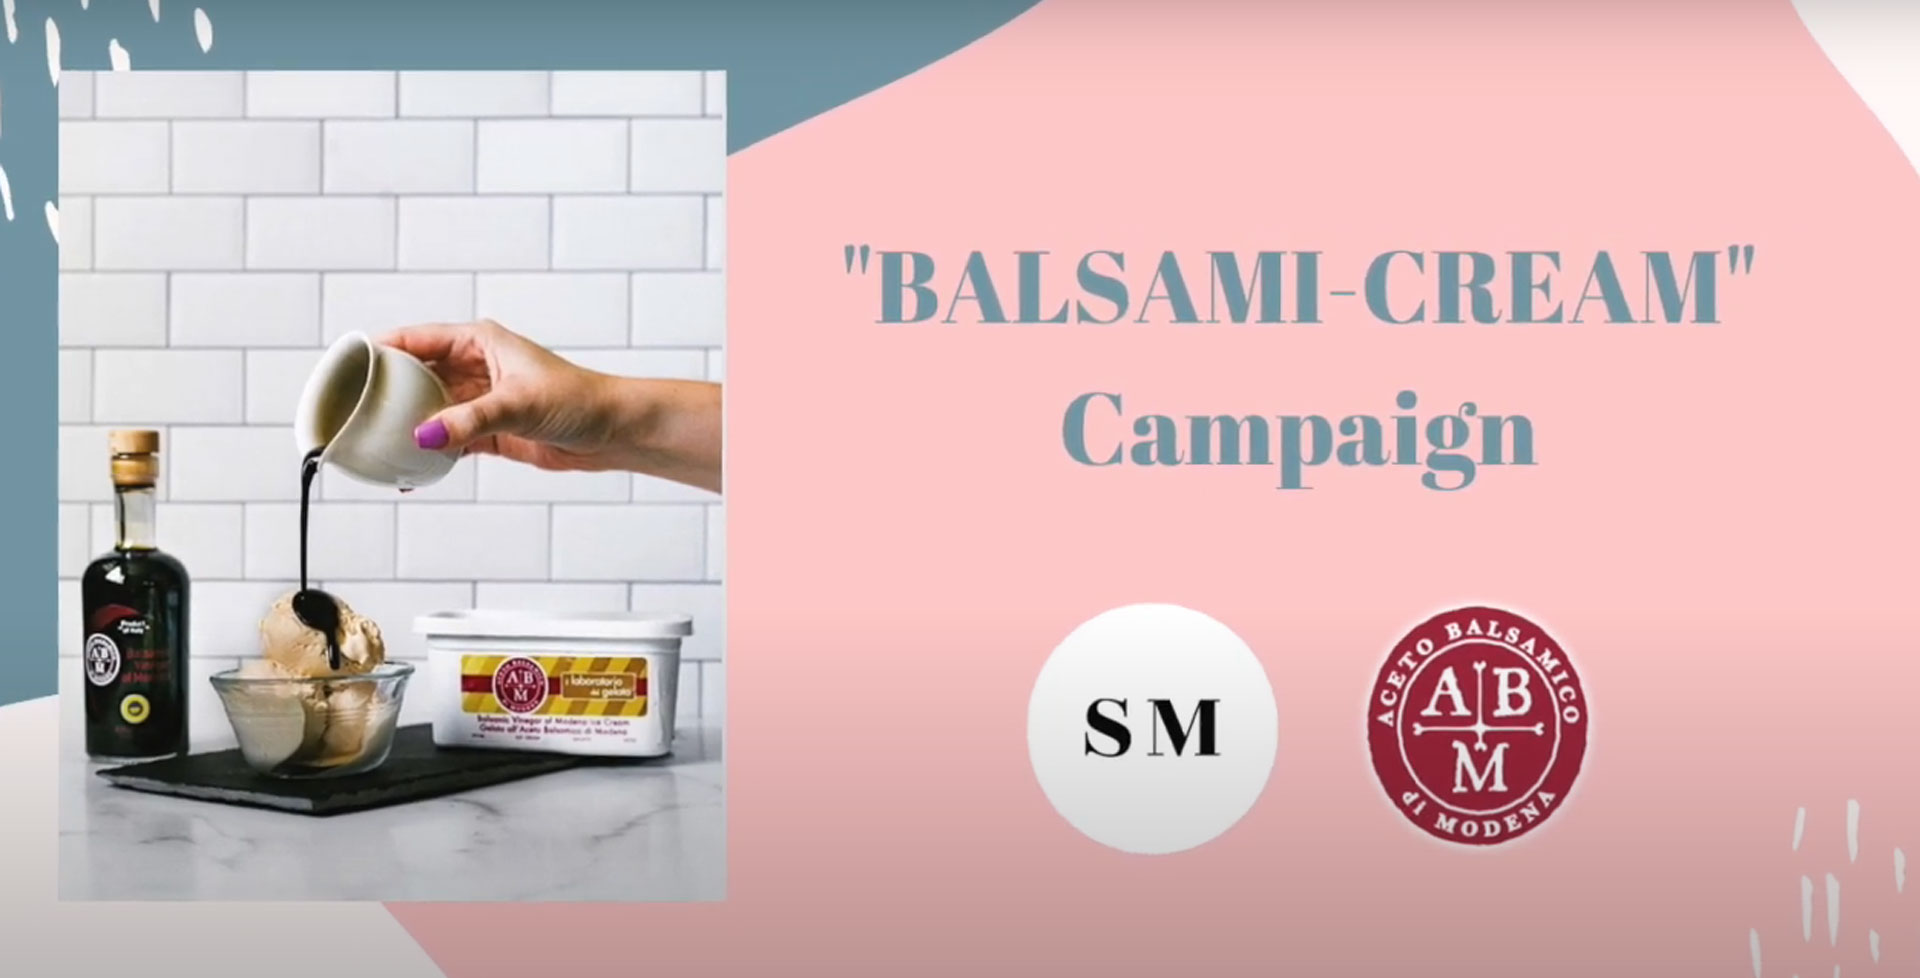 Scream for Balsami-cream: Summer 2020 Gelato Campaign